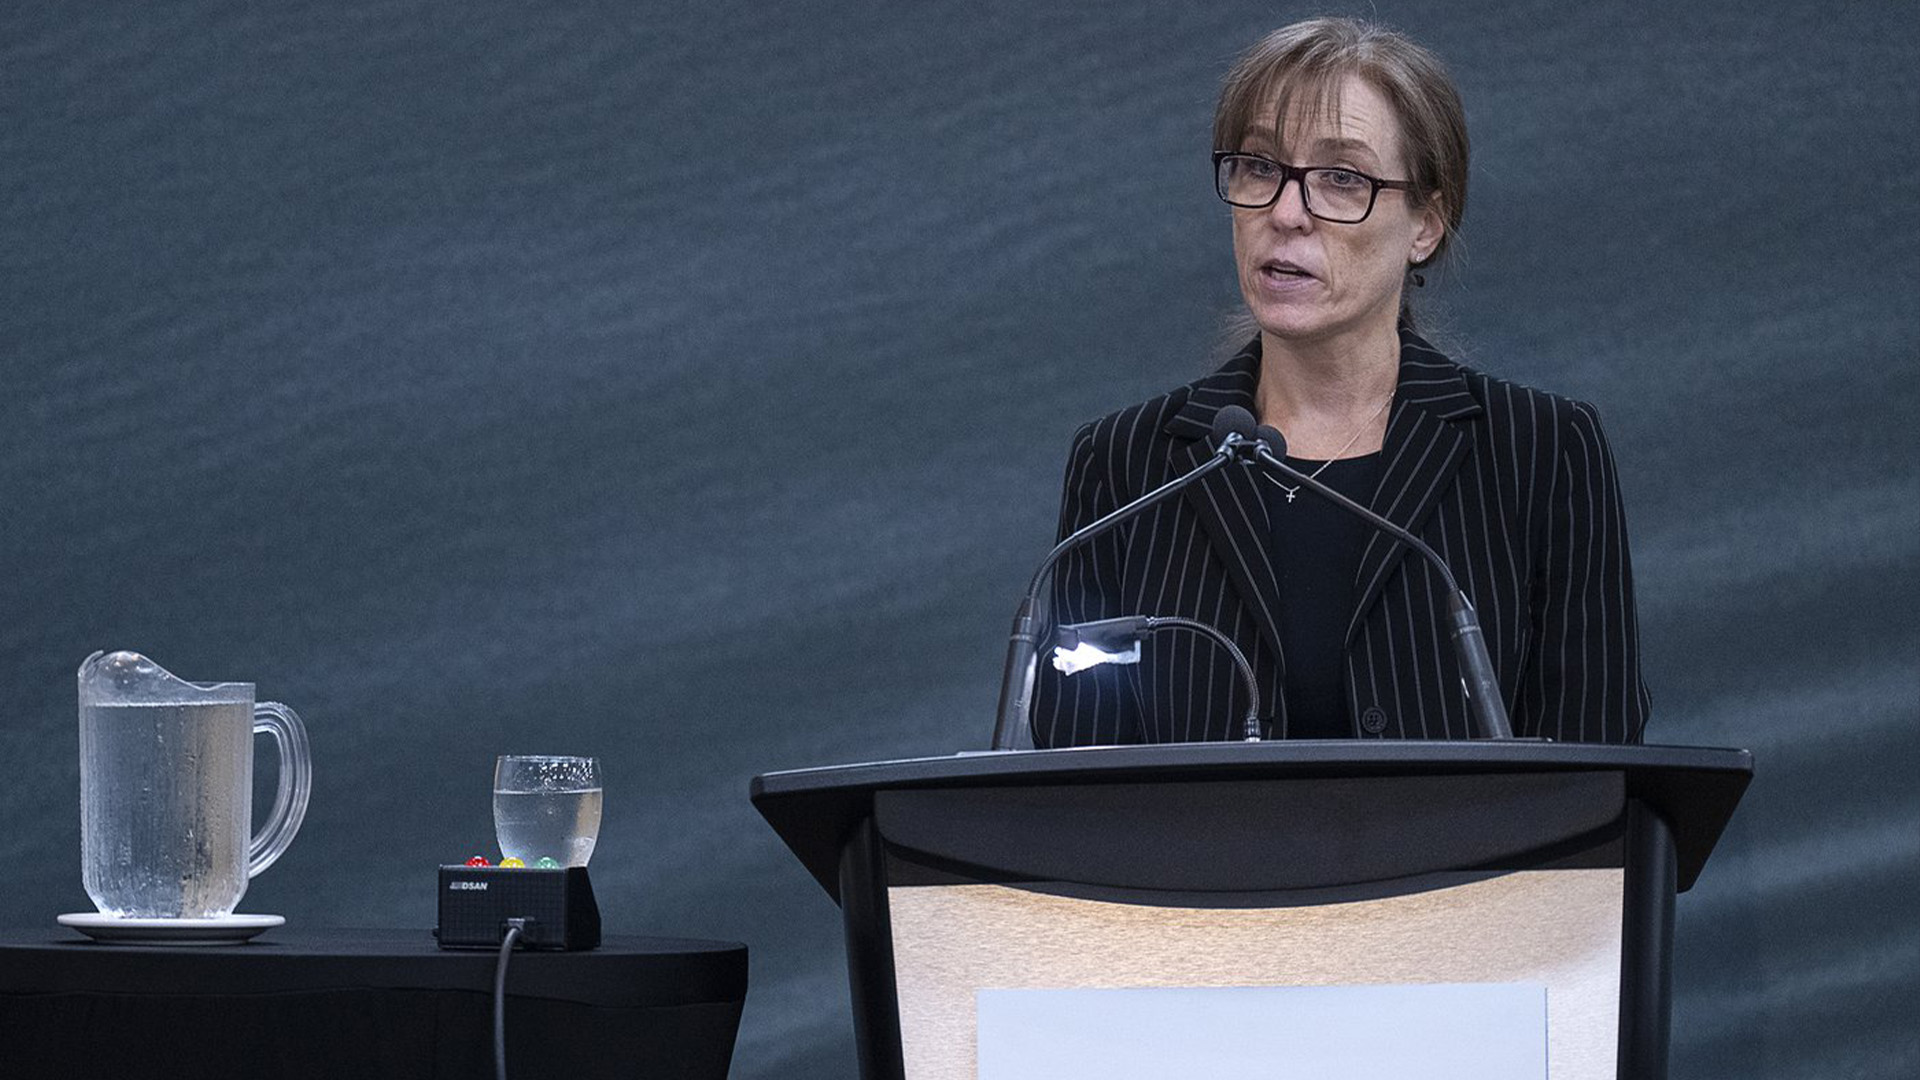 Lori Ward, représentant le ministère de la Justice Canada, s'adresse à l'enquête de la Mass Casualty Commission sur les meurtres de masse dans les régions rurales de la Nouvelle-Écosse les 18 et 19 avril 2020 à Truro, en Nouvelle-Écosse, le vendredi 23 septembre 2022.